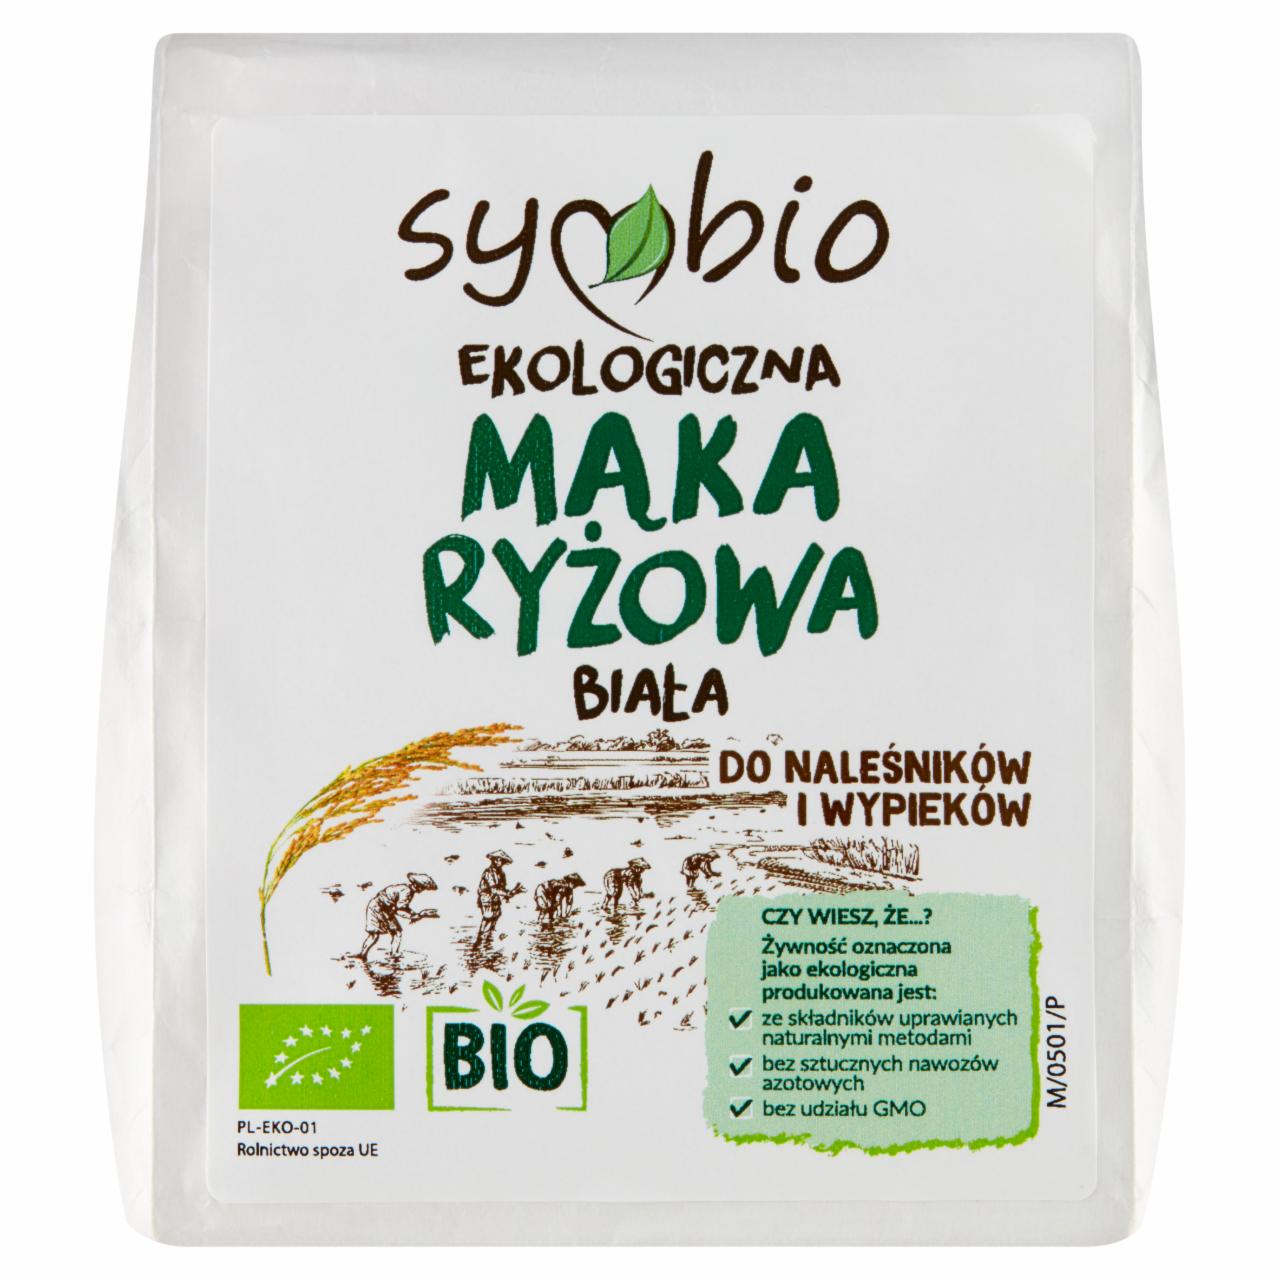 Zdjęcia - Symbio Ekologiczna mąka ryżowa biała 500 g